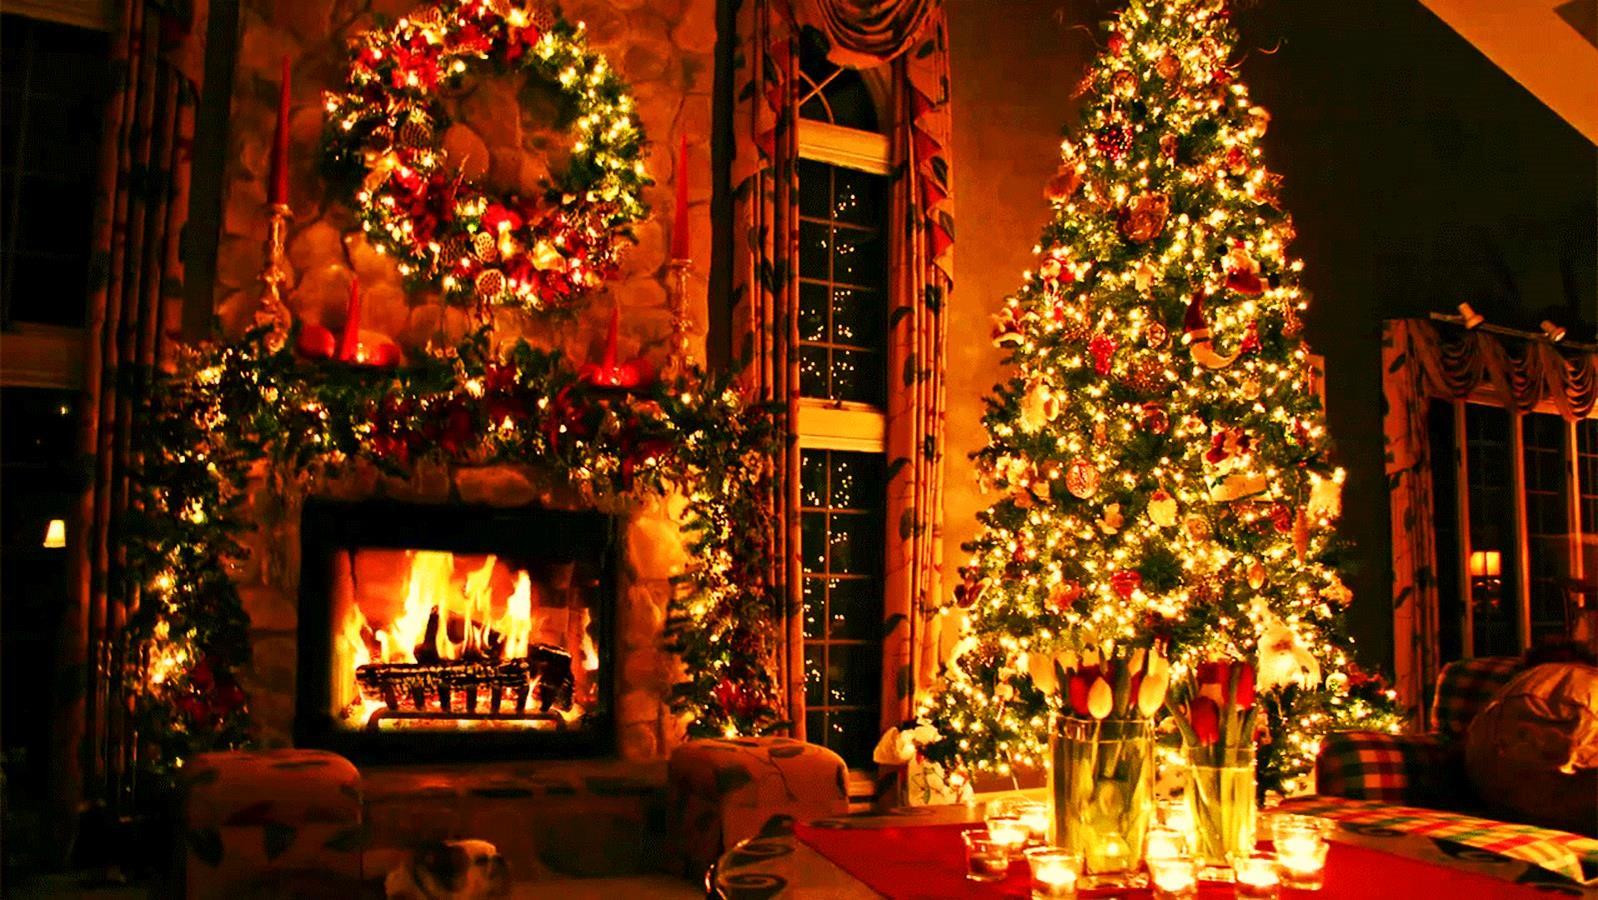 Christmas Fireplace Live Wallpaper
 Christmas Fireplace Live Wallpaper Android Apps on